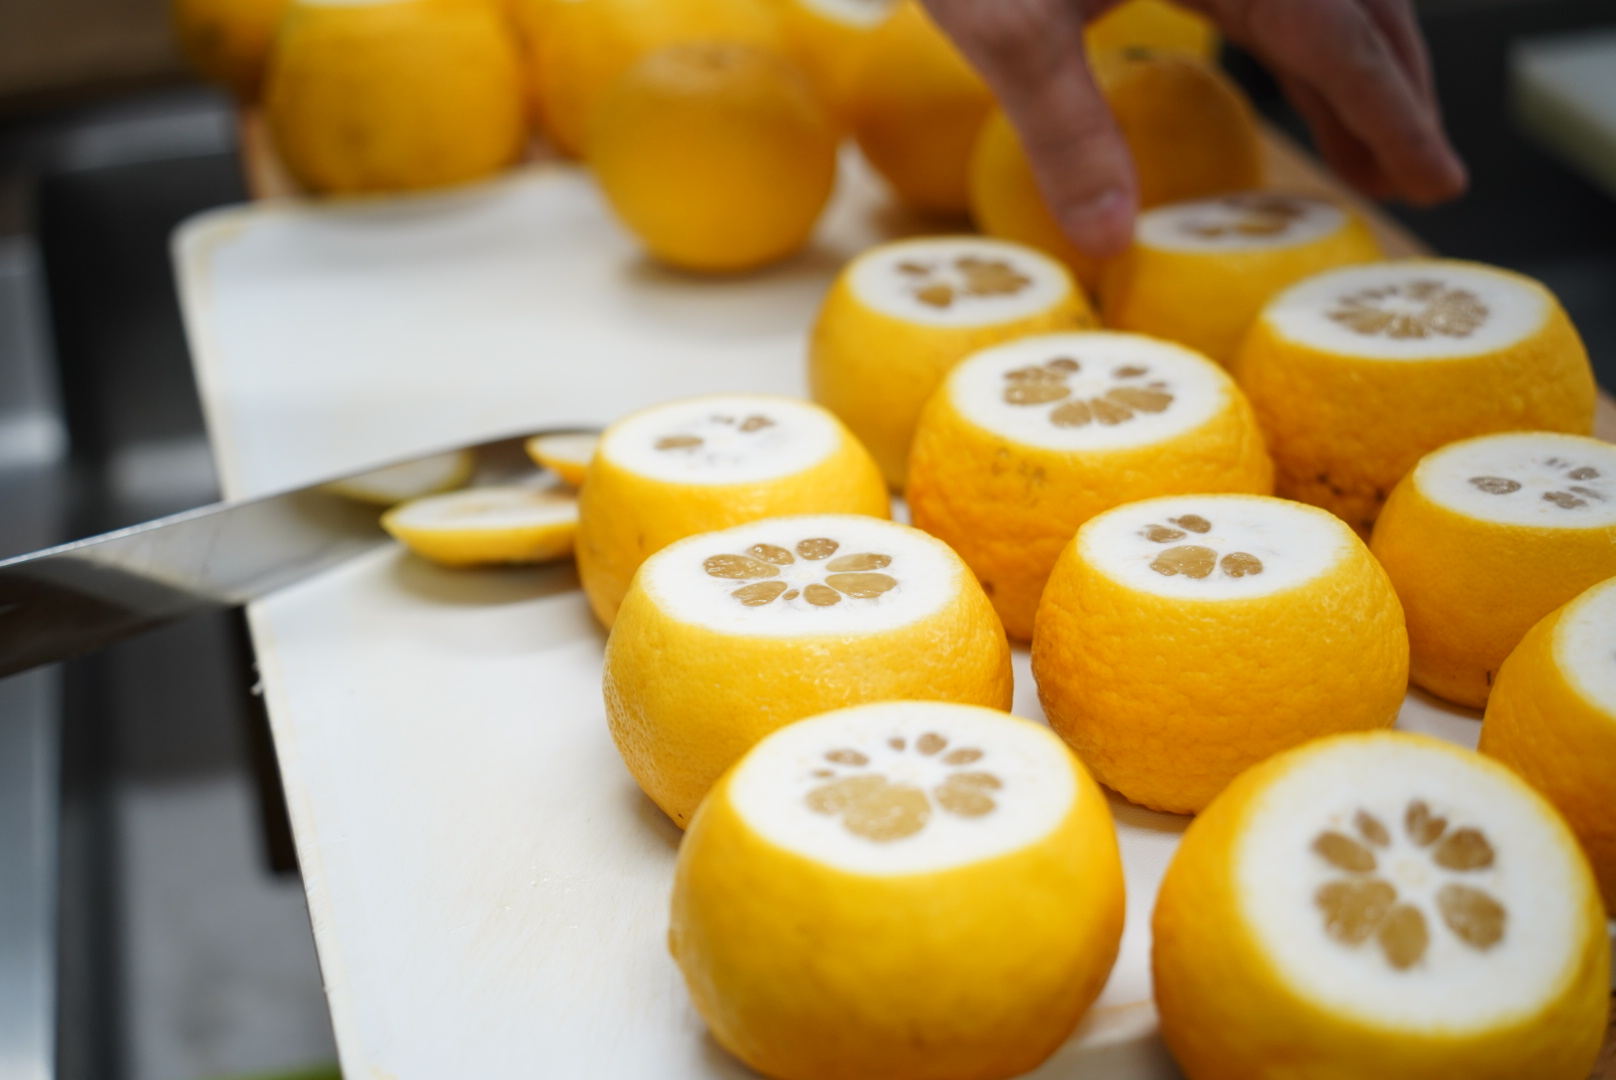 今回使用したニューサマーオレンジは計150個。白いわたを残して一個一個皮を剥いていきます。